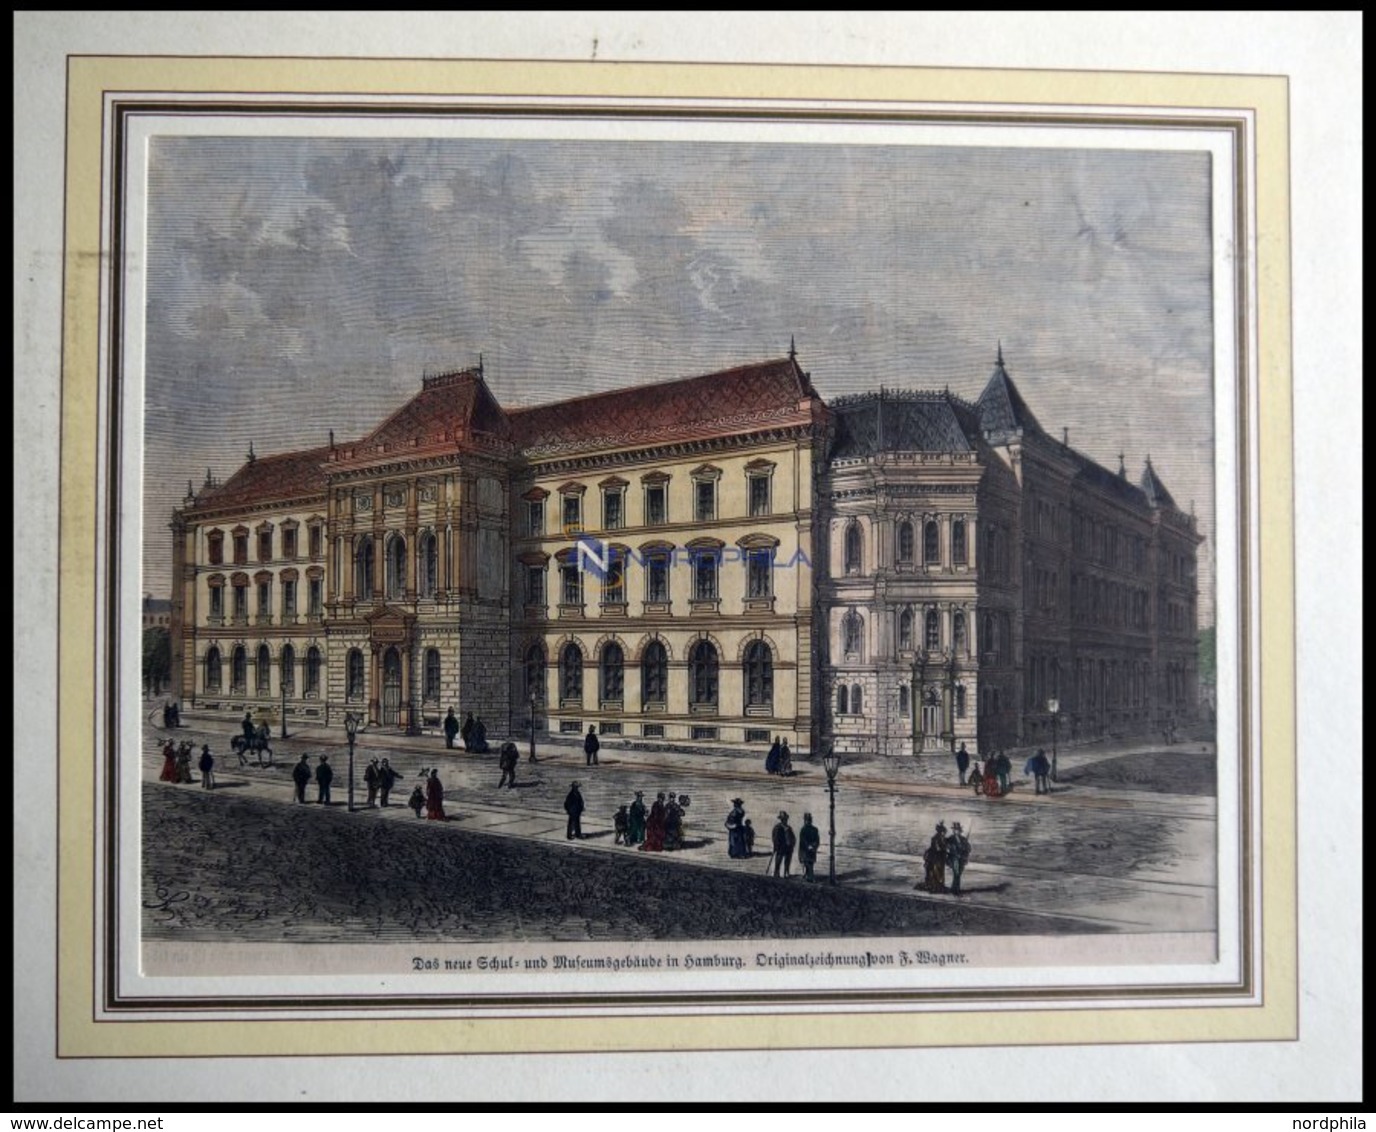 HAMBURG: Das Neue Schul-u. Museumsgebäude, Kolorierter Holzstich Von Wagner Um 1880 - Lithographies